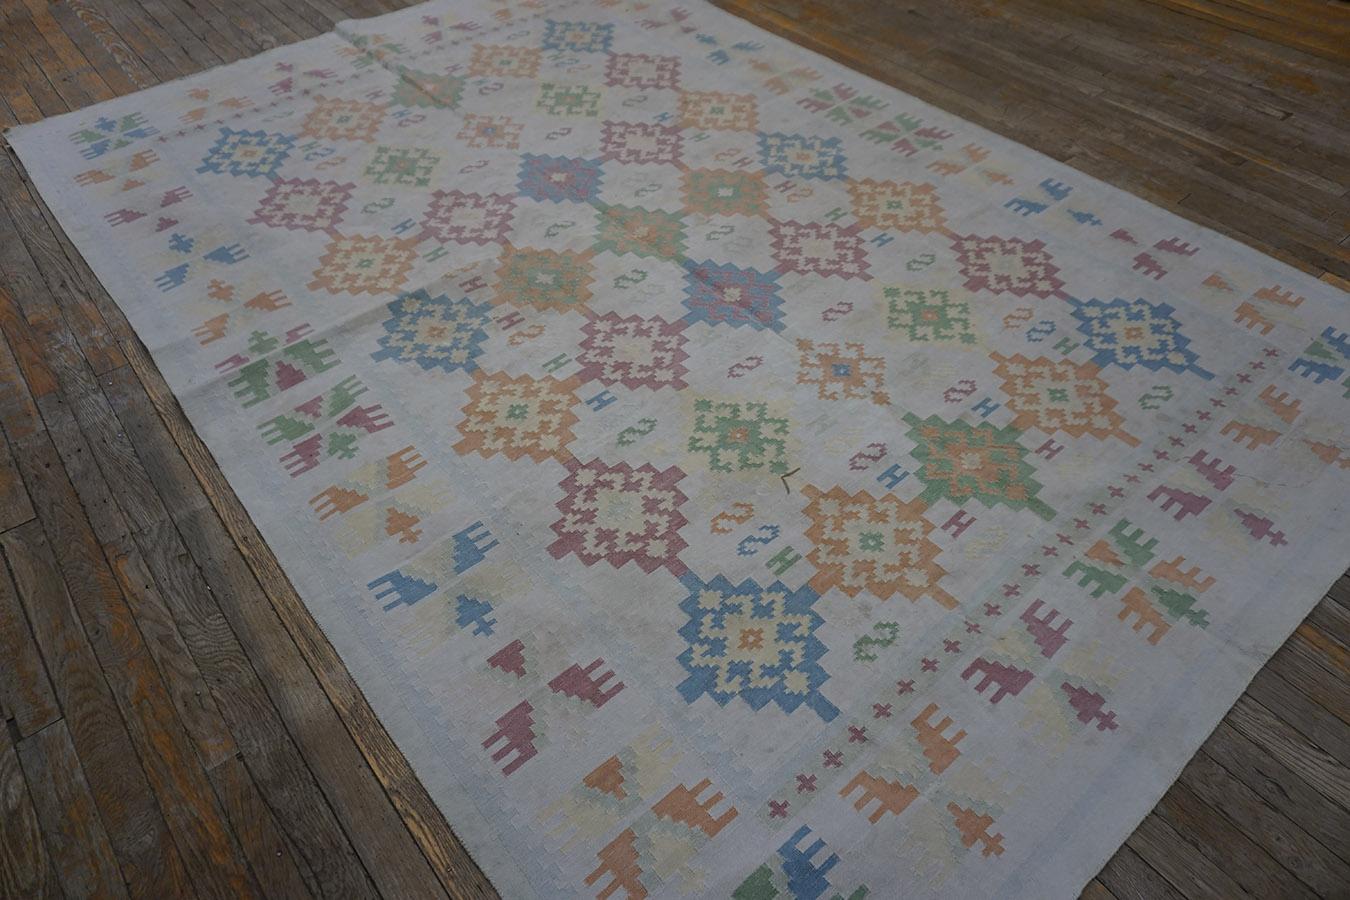 Indischer Dhurrie-Teppich aus Baumwolle des frühen 20. Jahrhunderts ( 6' x 9' - 183 x 274)
Dieser Dhurrie sieht wirklich aus wie ein zart gefärbter türkischer Kelim mit einem Sandfeld, das fünf Säulen aus gestuften Rauten aufweist, die kleine